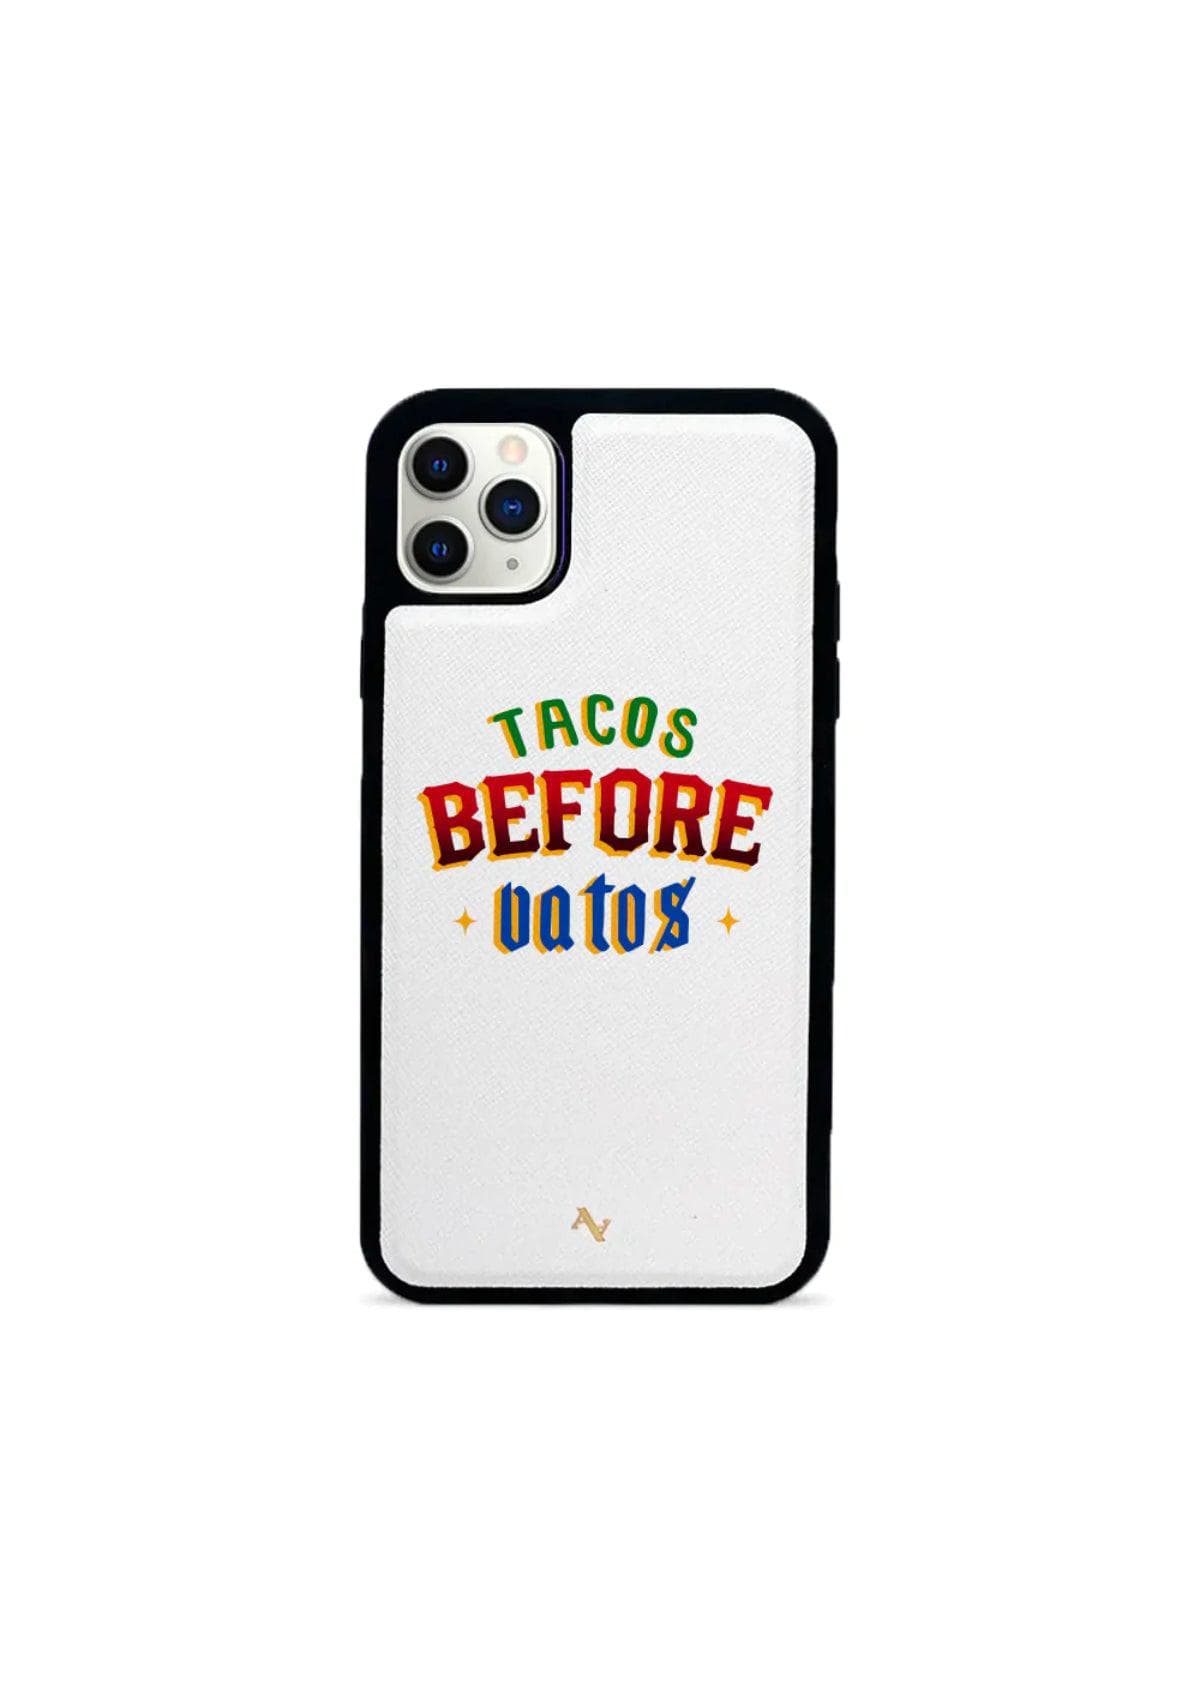 Tacos Before Vatos Phone Case - 11 Pro Max